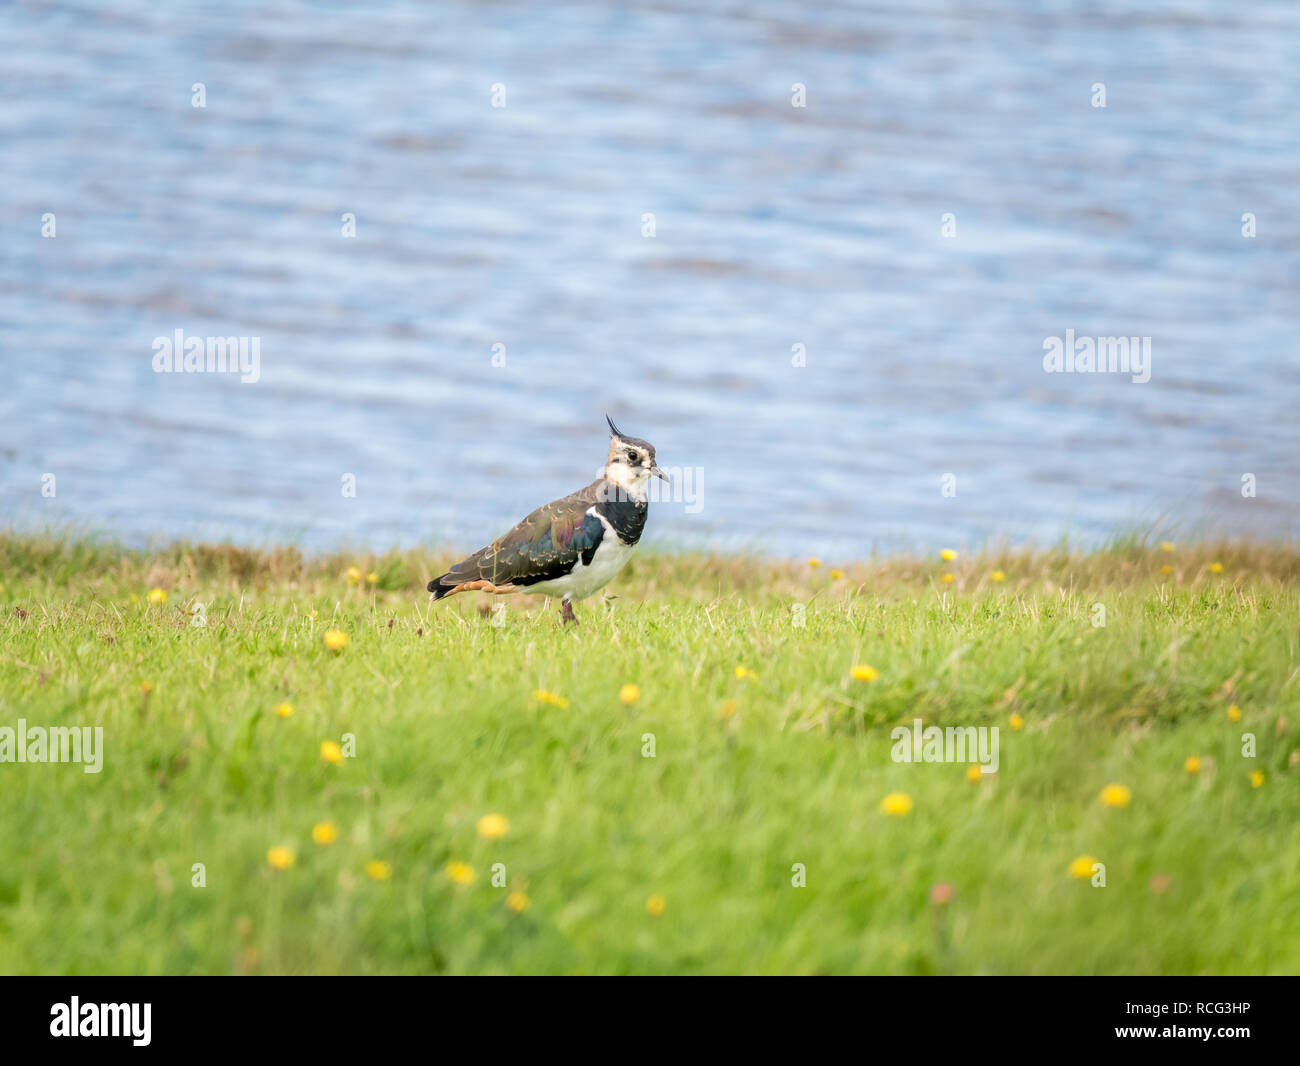 Portrait du nord de sociable, Vanellus vanellus, dans l'herbe près de l'eau, Pays-Bas - faible profondeur de champ, selective focus Banque D'Images